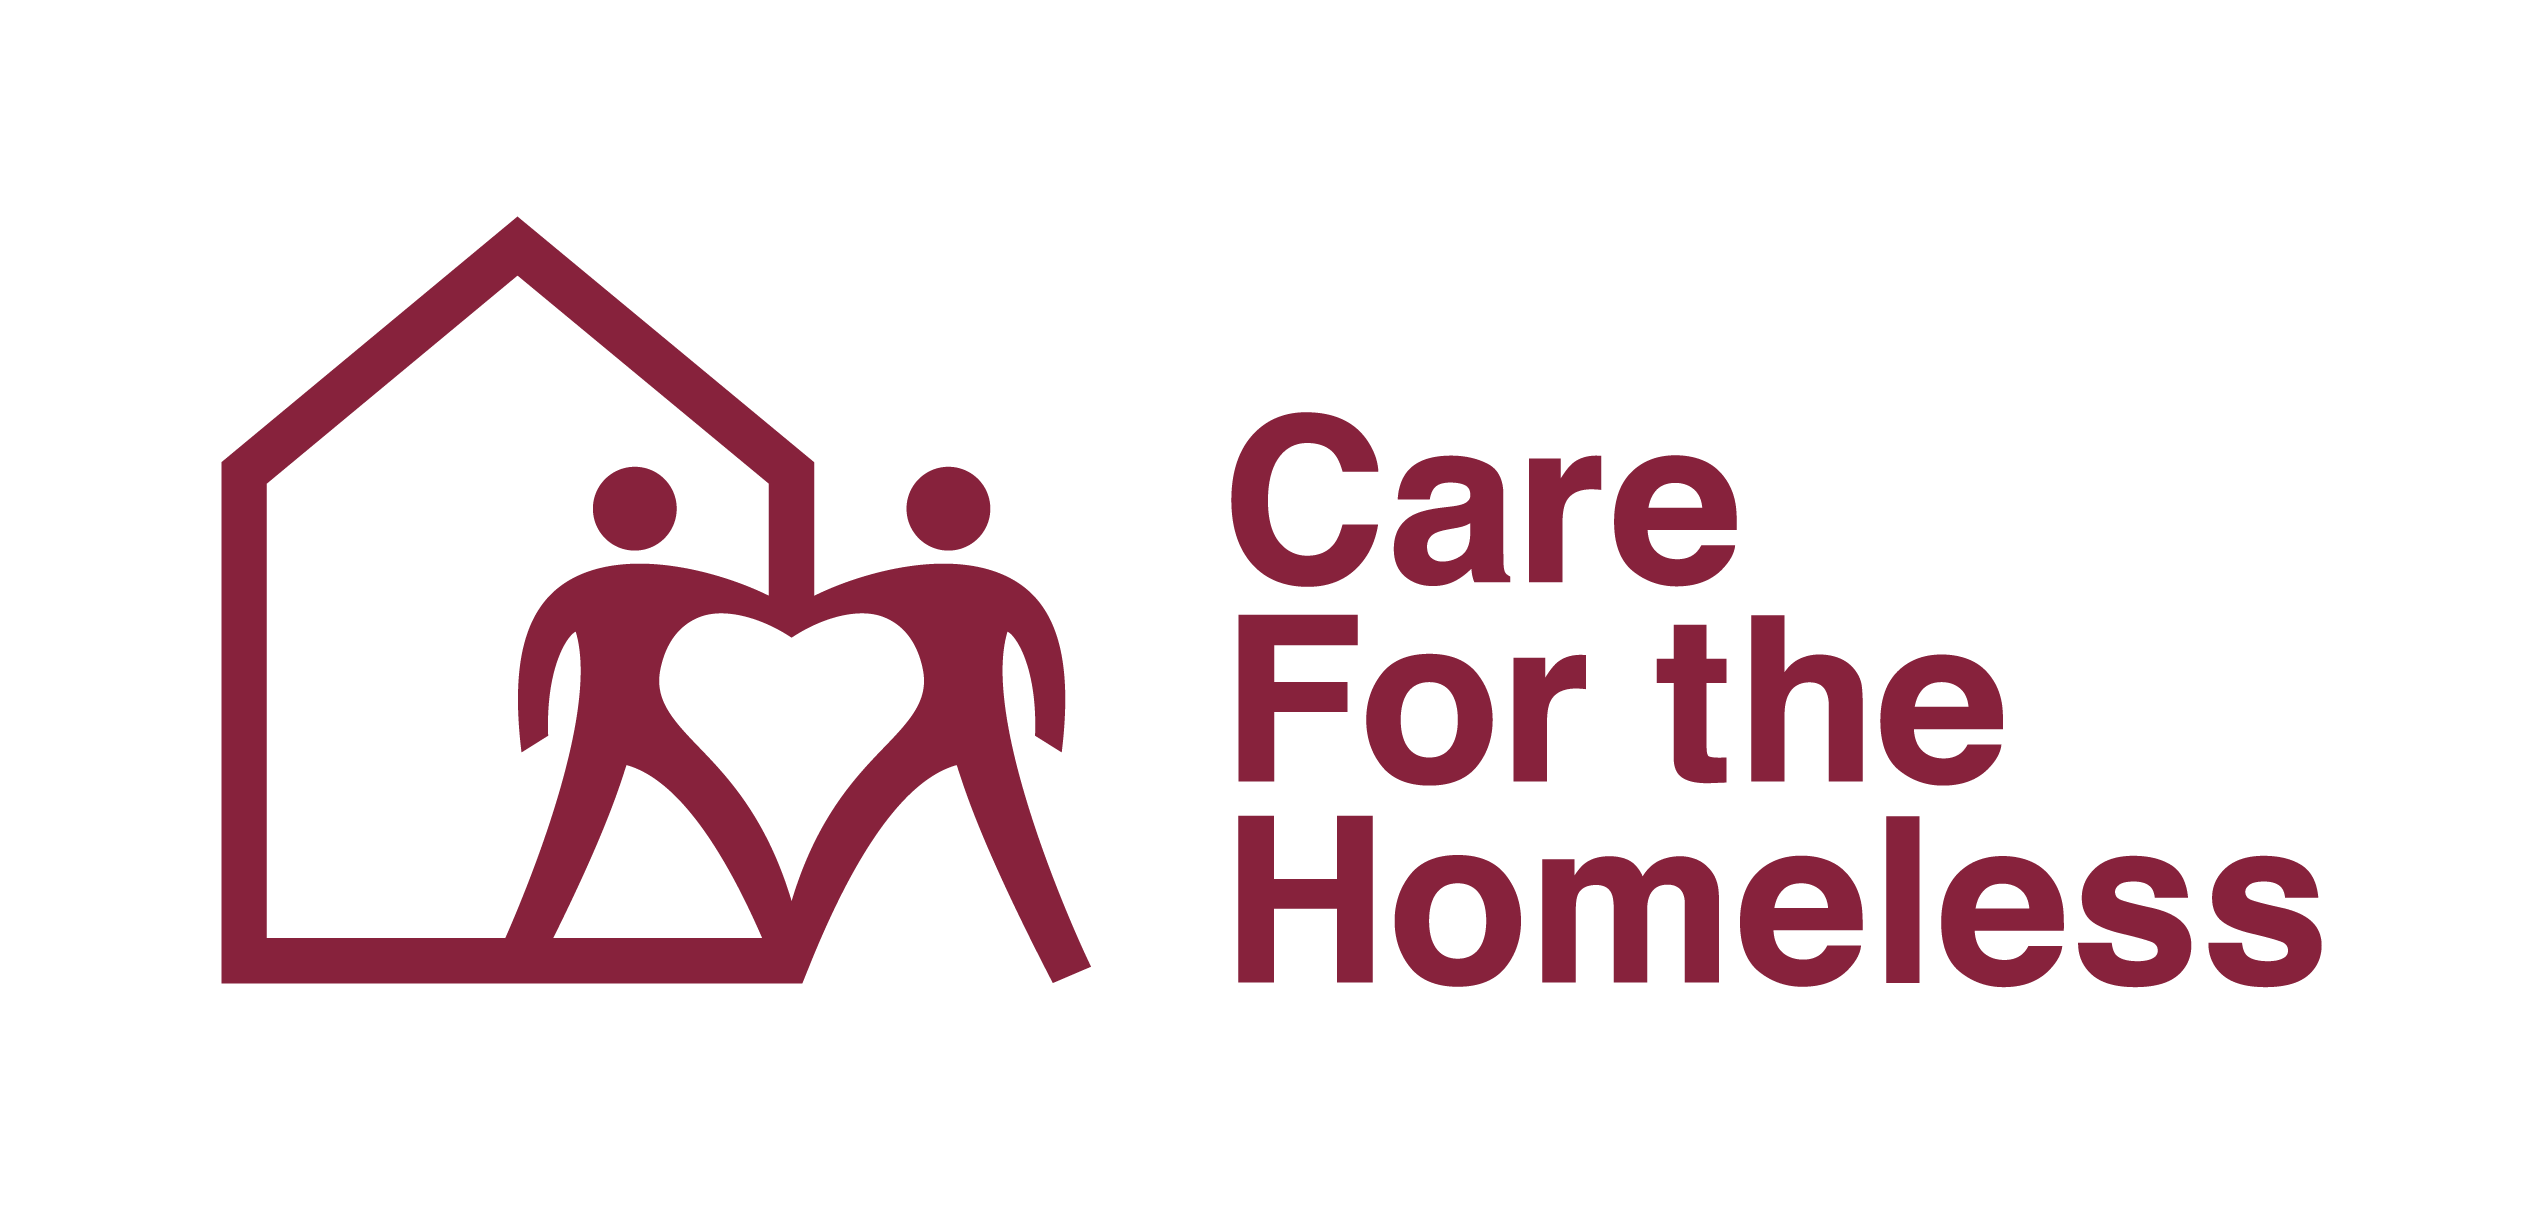 Homeless Logo - Care For the Homeless